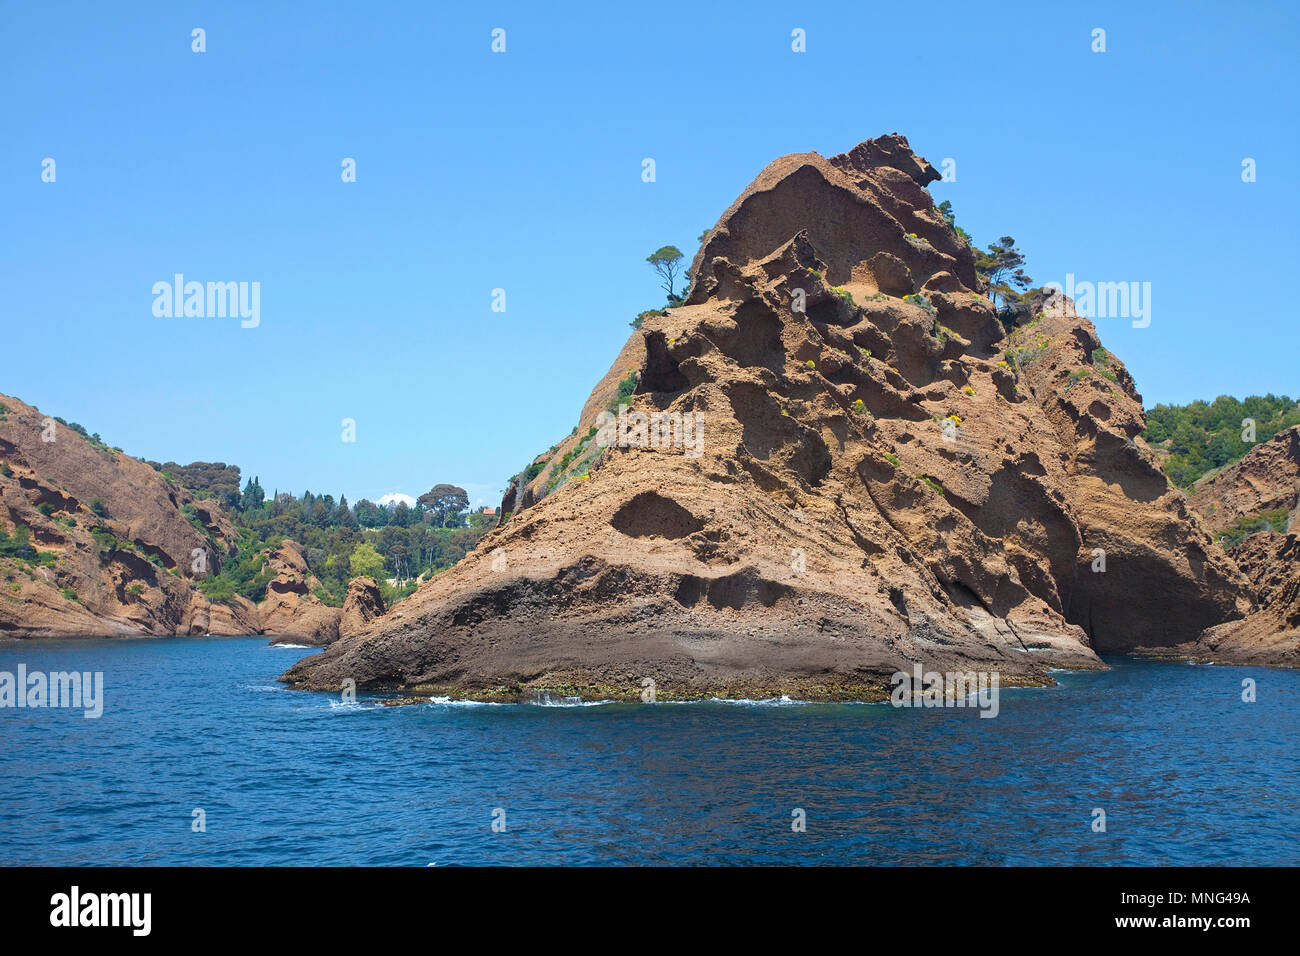 Cliff, rocky coast at La Ciotat, Bouches-du-Rhone, Cote d'Azur, South France, France, Europe Stock Photo